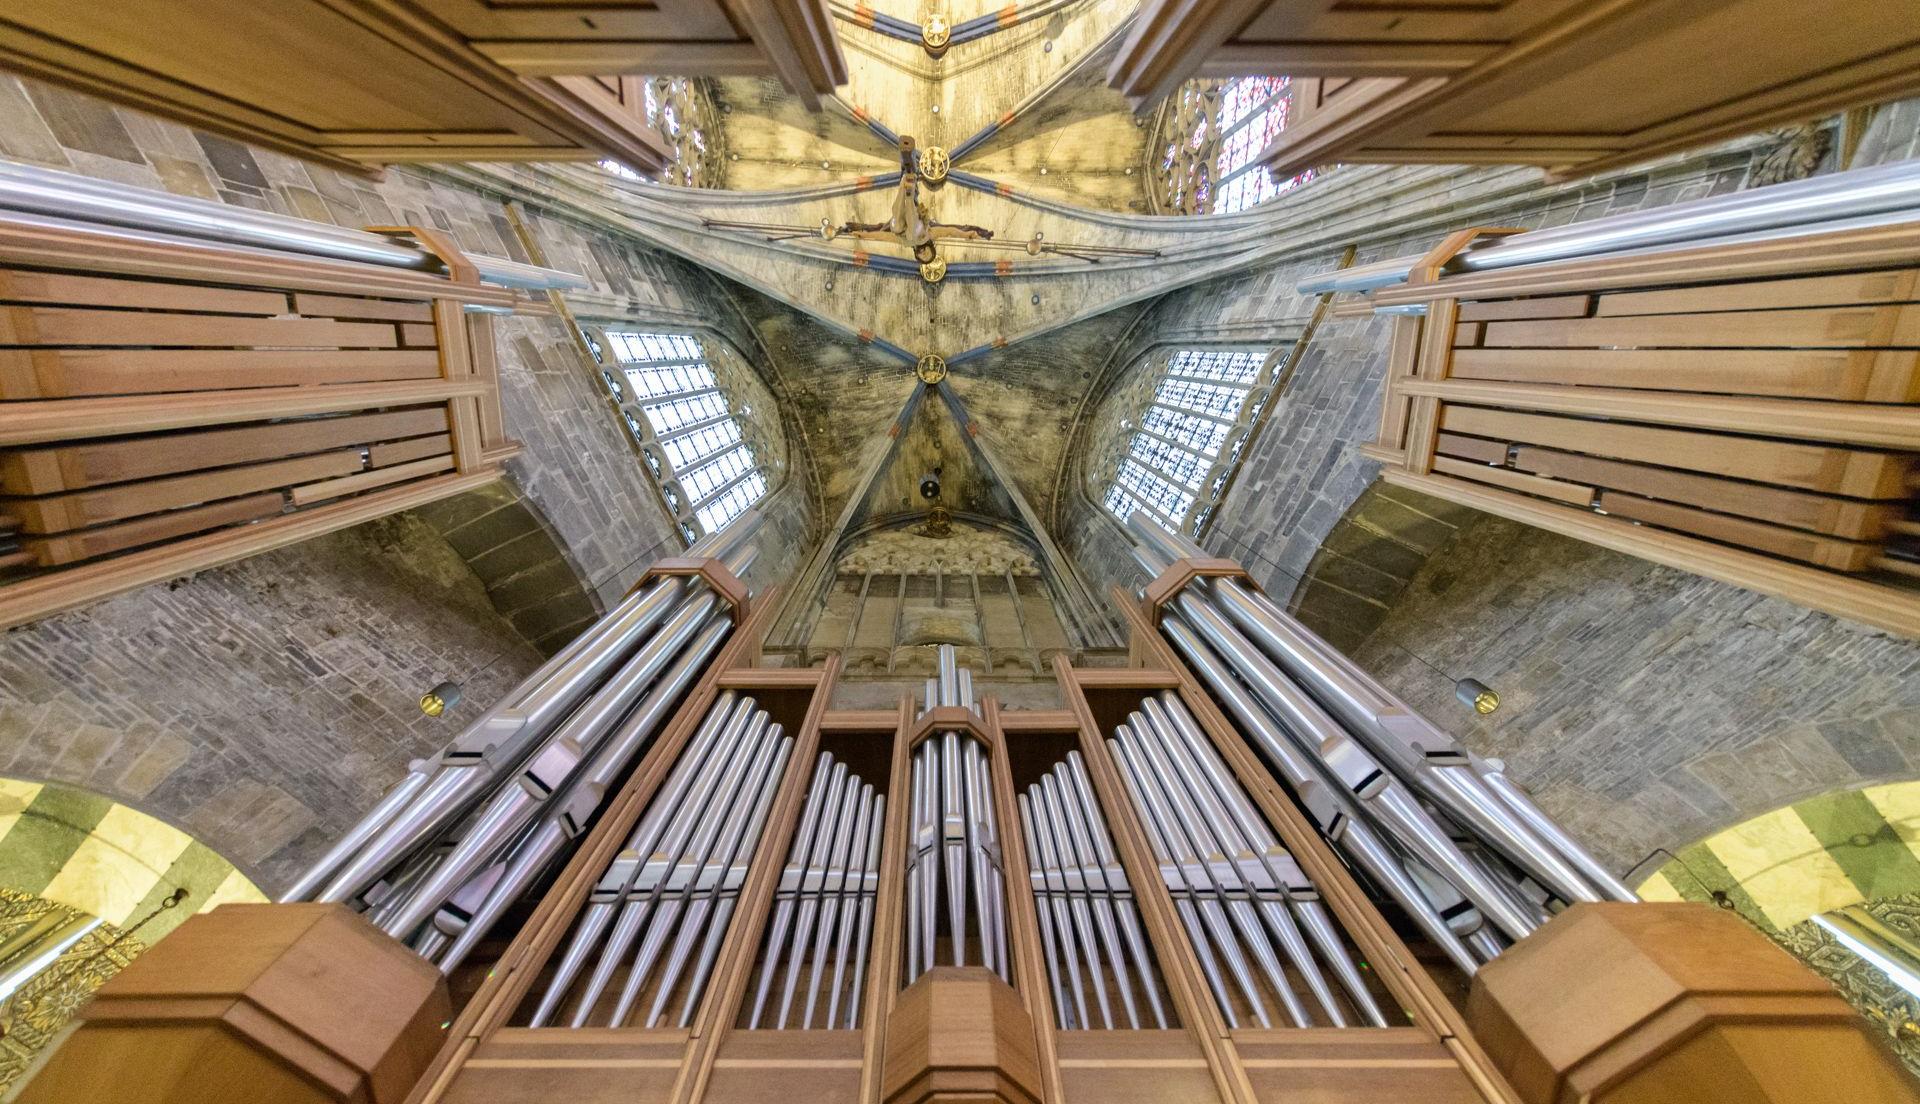 Die Orgel - Instrument des Jahres 2021 (c) St. Meul/Dommusik Aachen